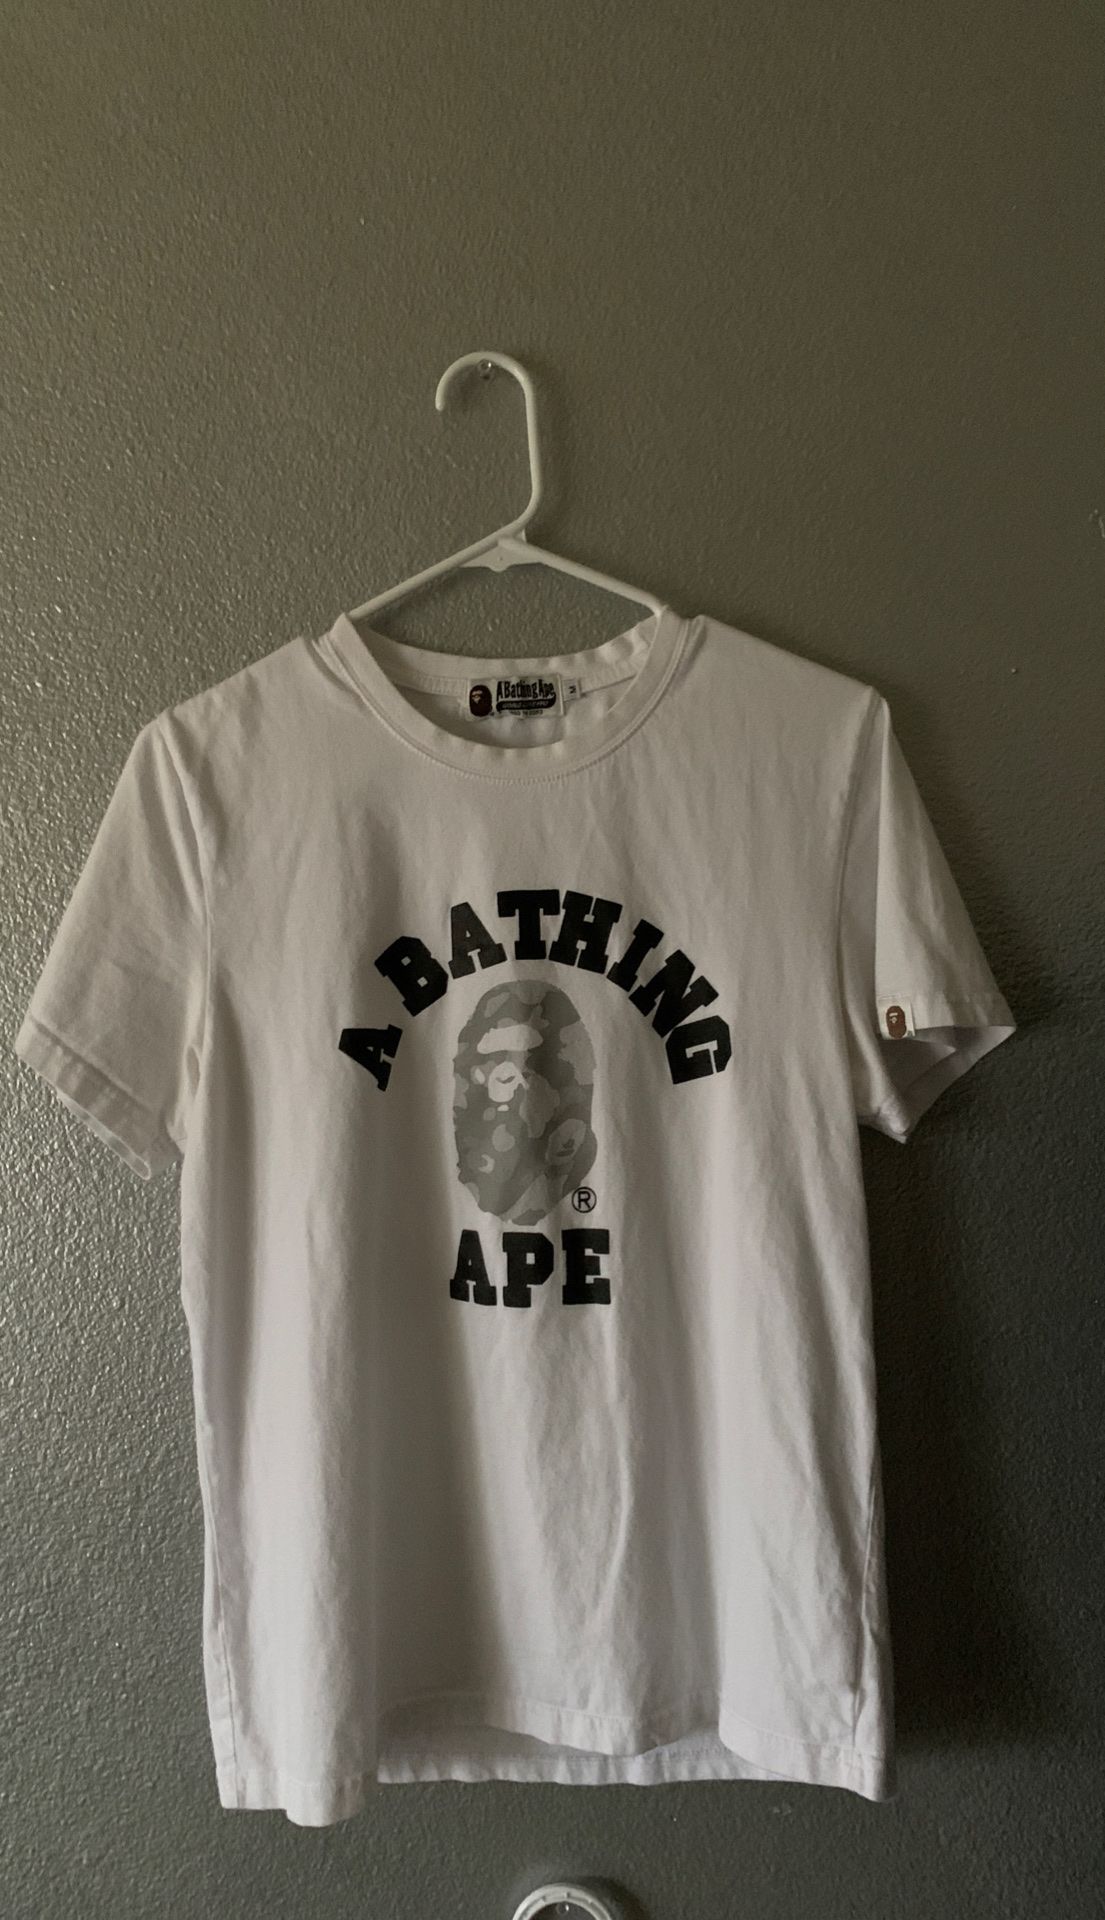 Bathing Ape (Bape) Shirt size Medium